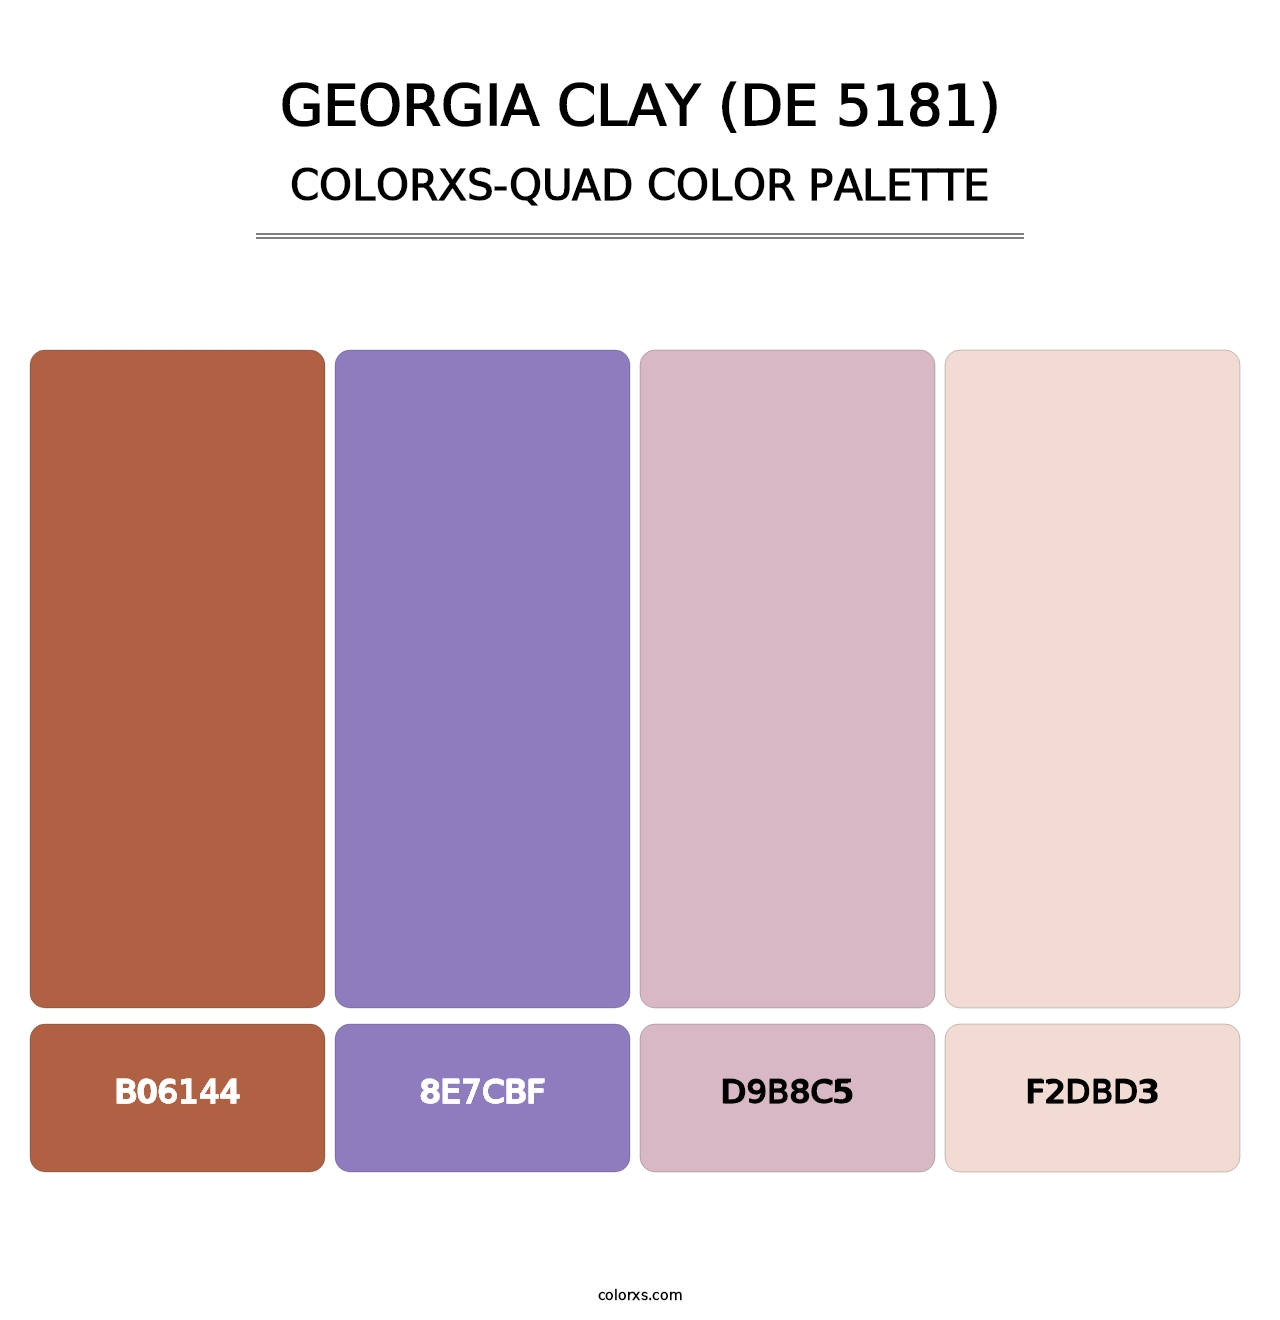 Georgia Clay (DE 5181) - Colorxs Quad Palette